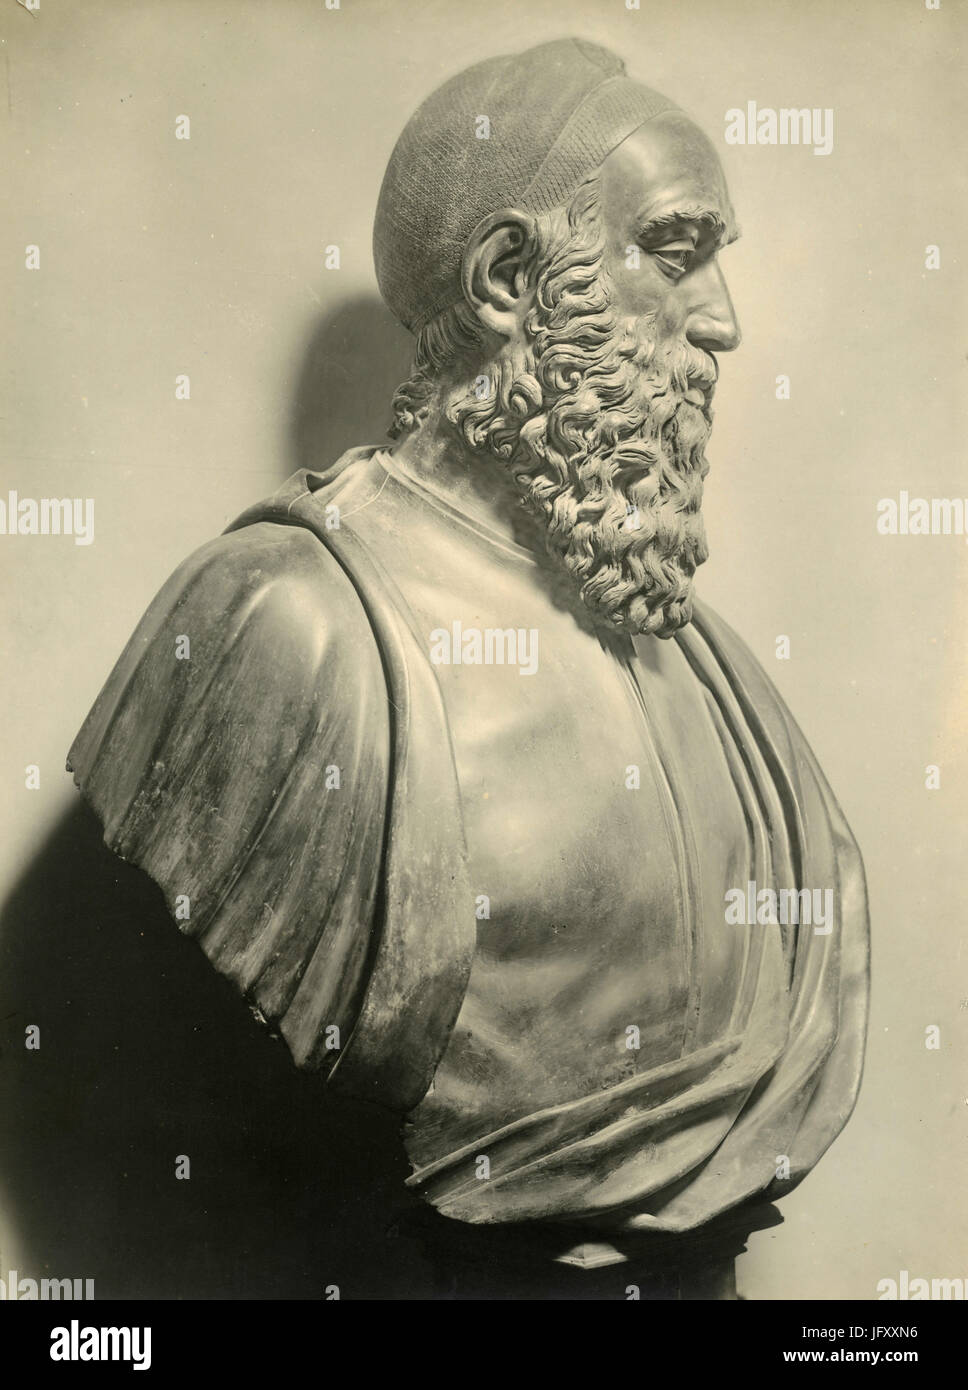 Statue of Bindo Altoviti, by Benvenuto Cellini, Paris, France Stock Photo